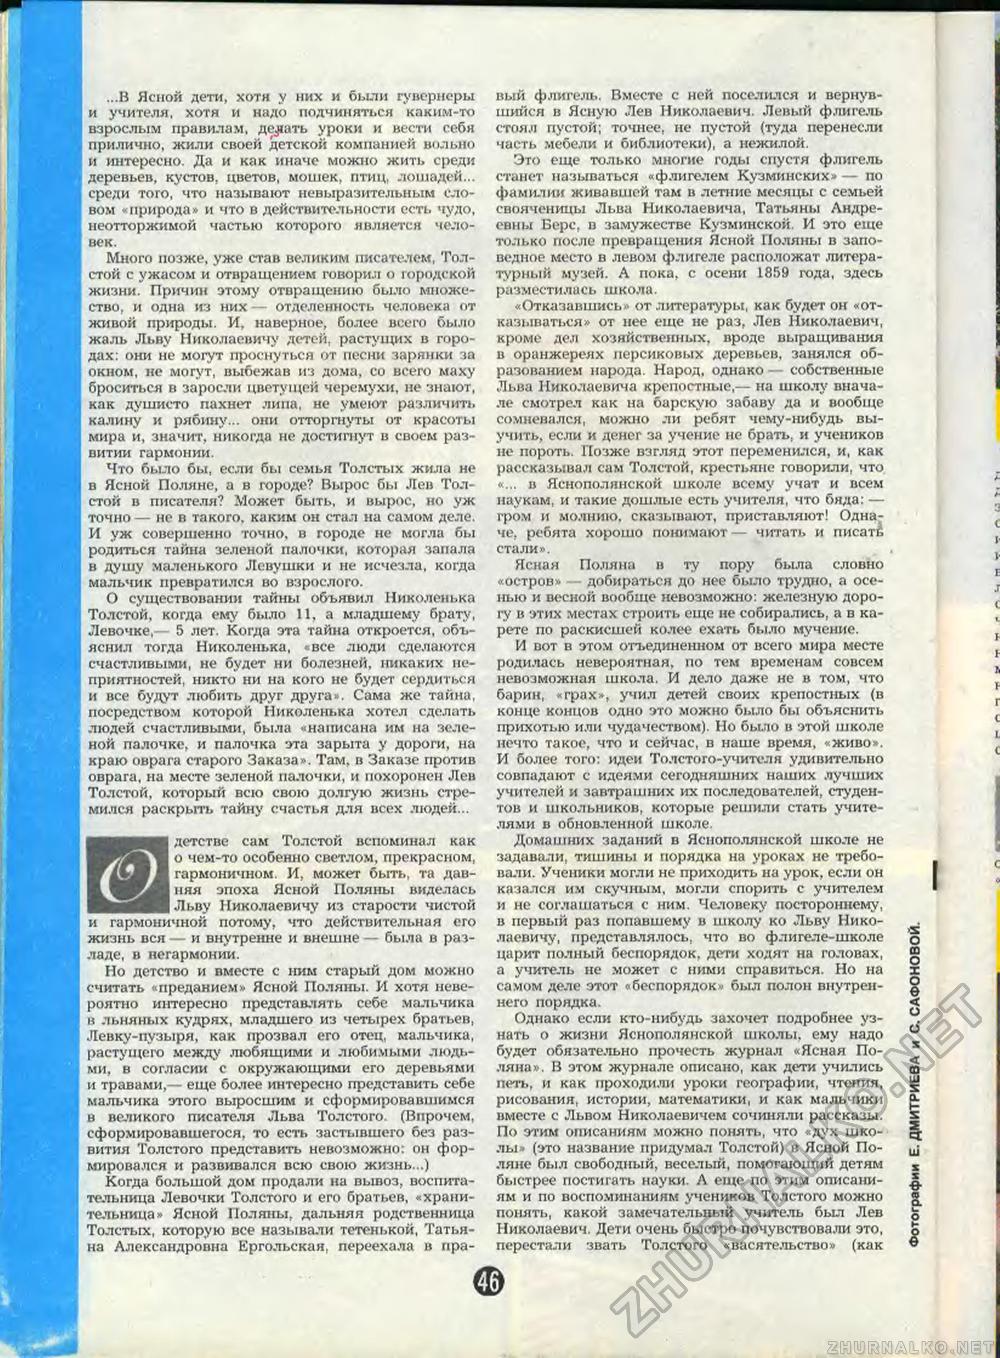  1988-08,  49